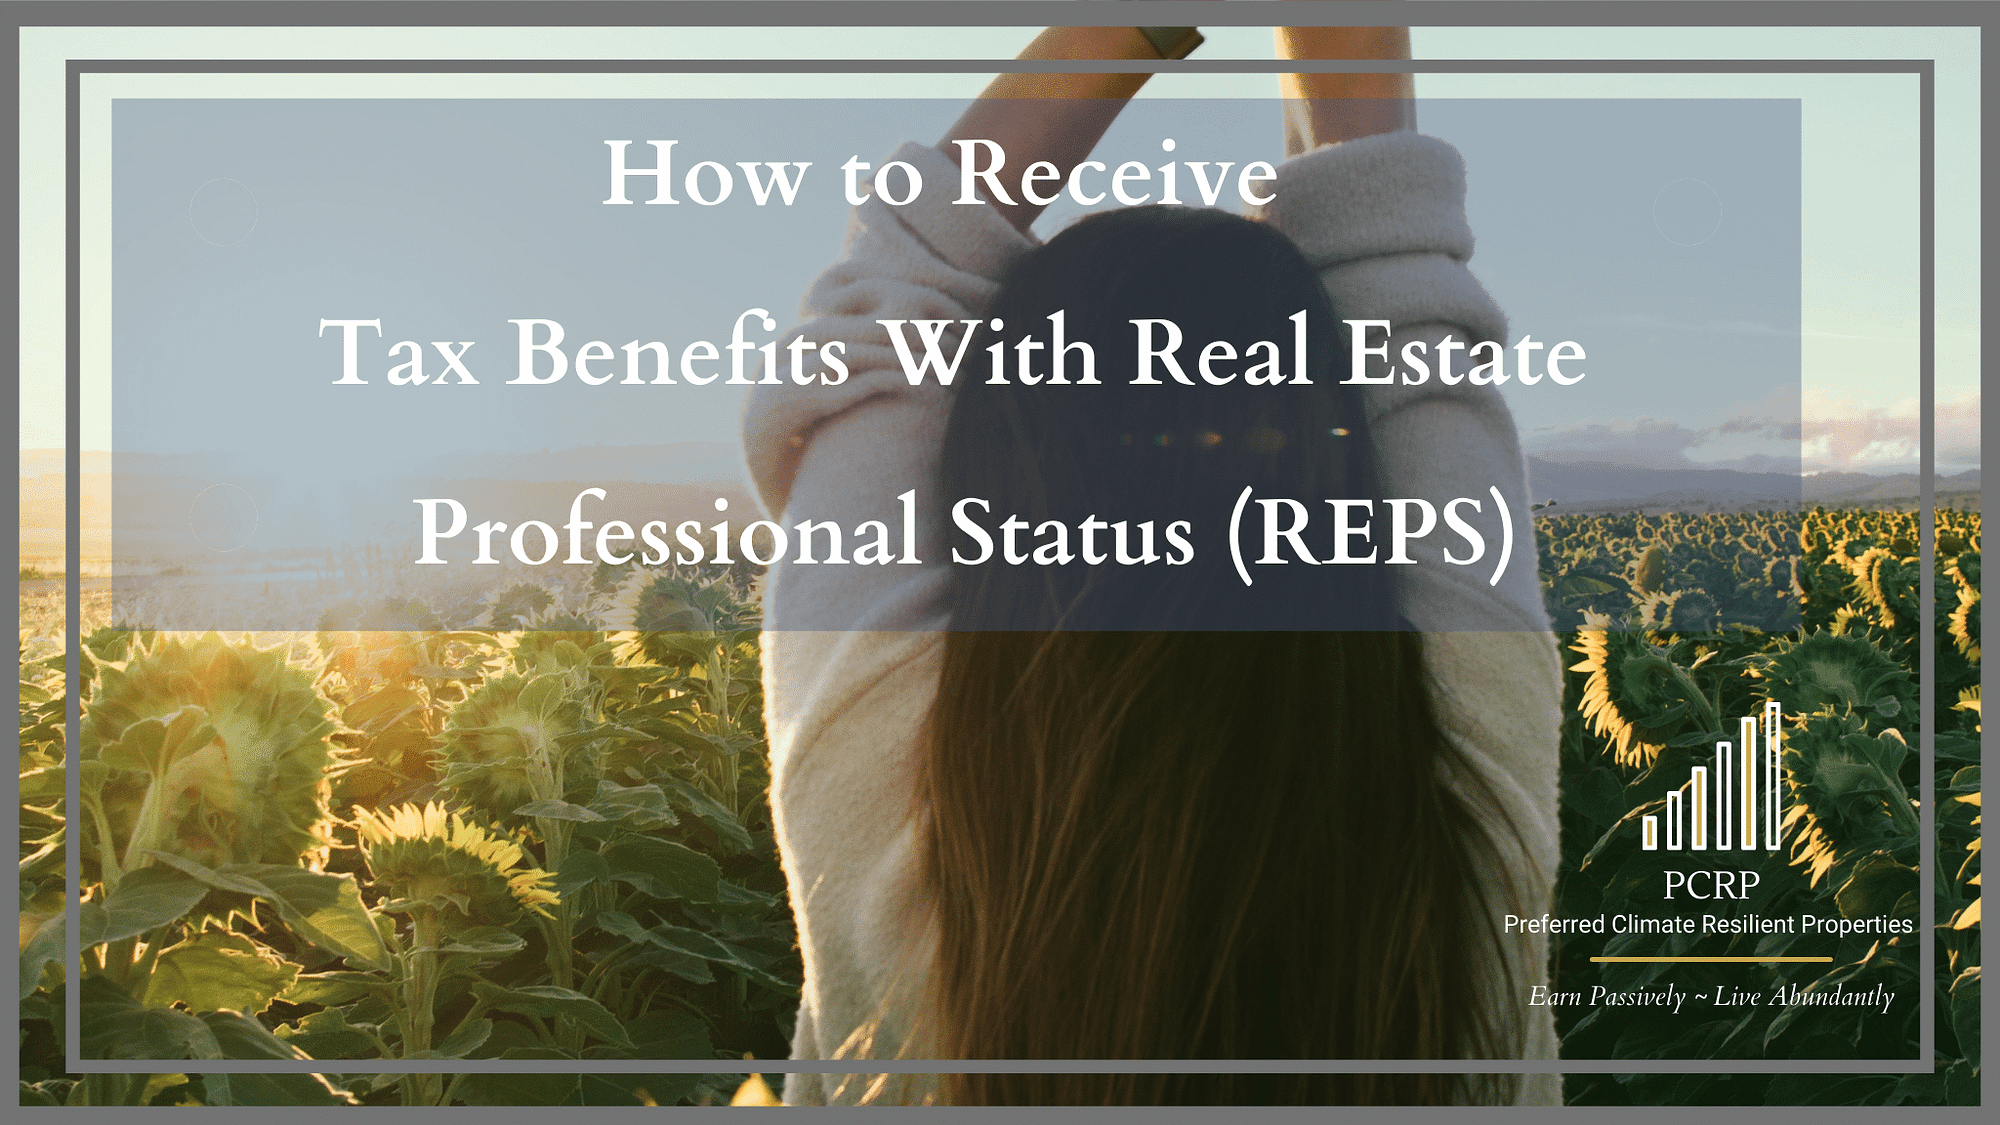 Reps Status Real Estate Professional Status